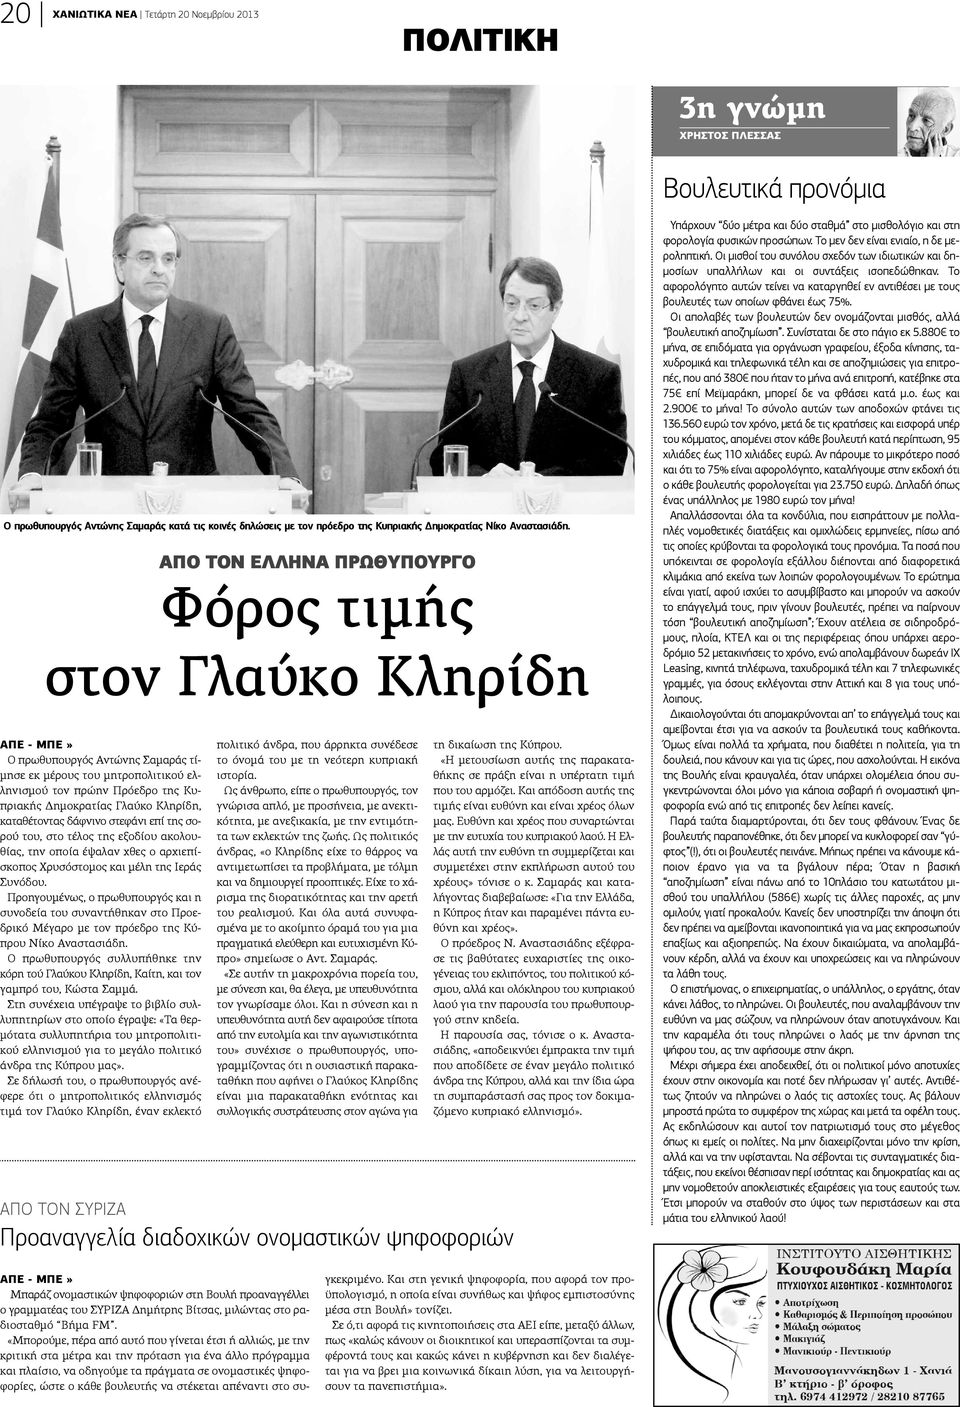 ΑΠΕ - ΜΠΕ» Ο πρωθυπουργός Αντώνης Σαμαράς τίμησε εκ μέρους του μητροπολιτικού ελληνισμού τον πρώην Πρόεδρο της Κυπριακής Δημοκρατίας Γλαύκο Κληρίδη, καταθέτοντας δάφνινο στεφάνι επί της σορού του,